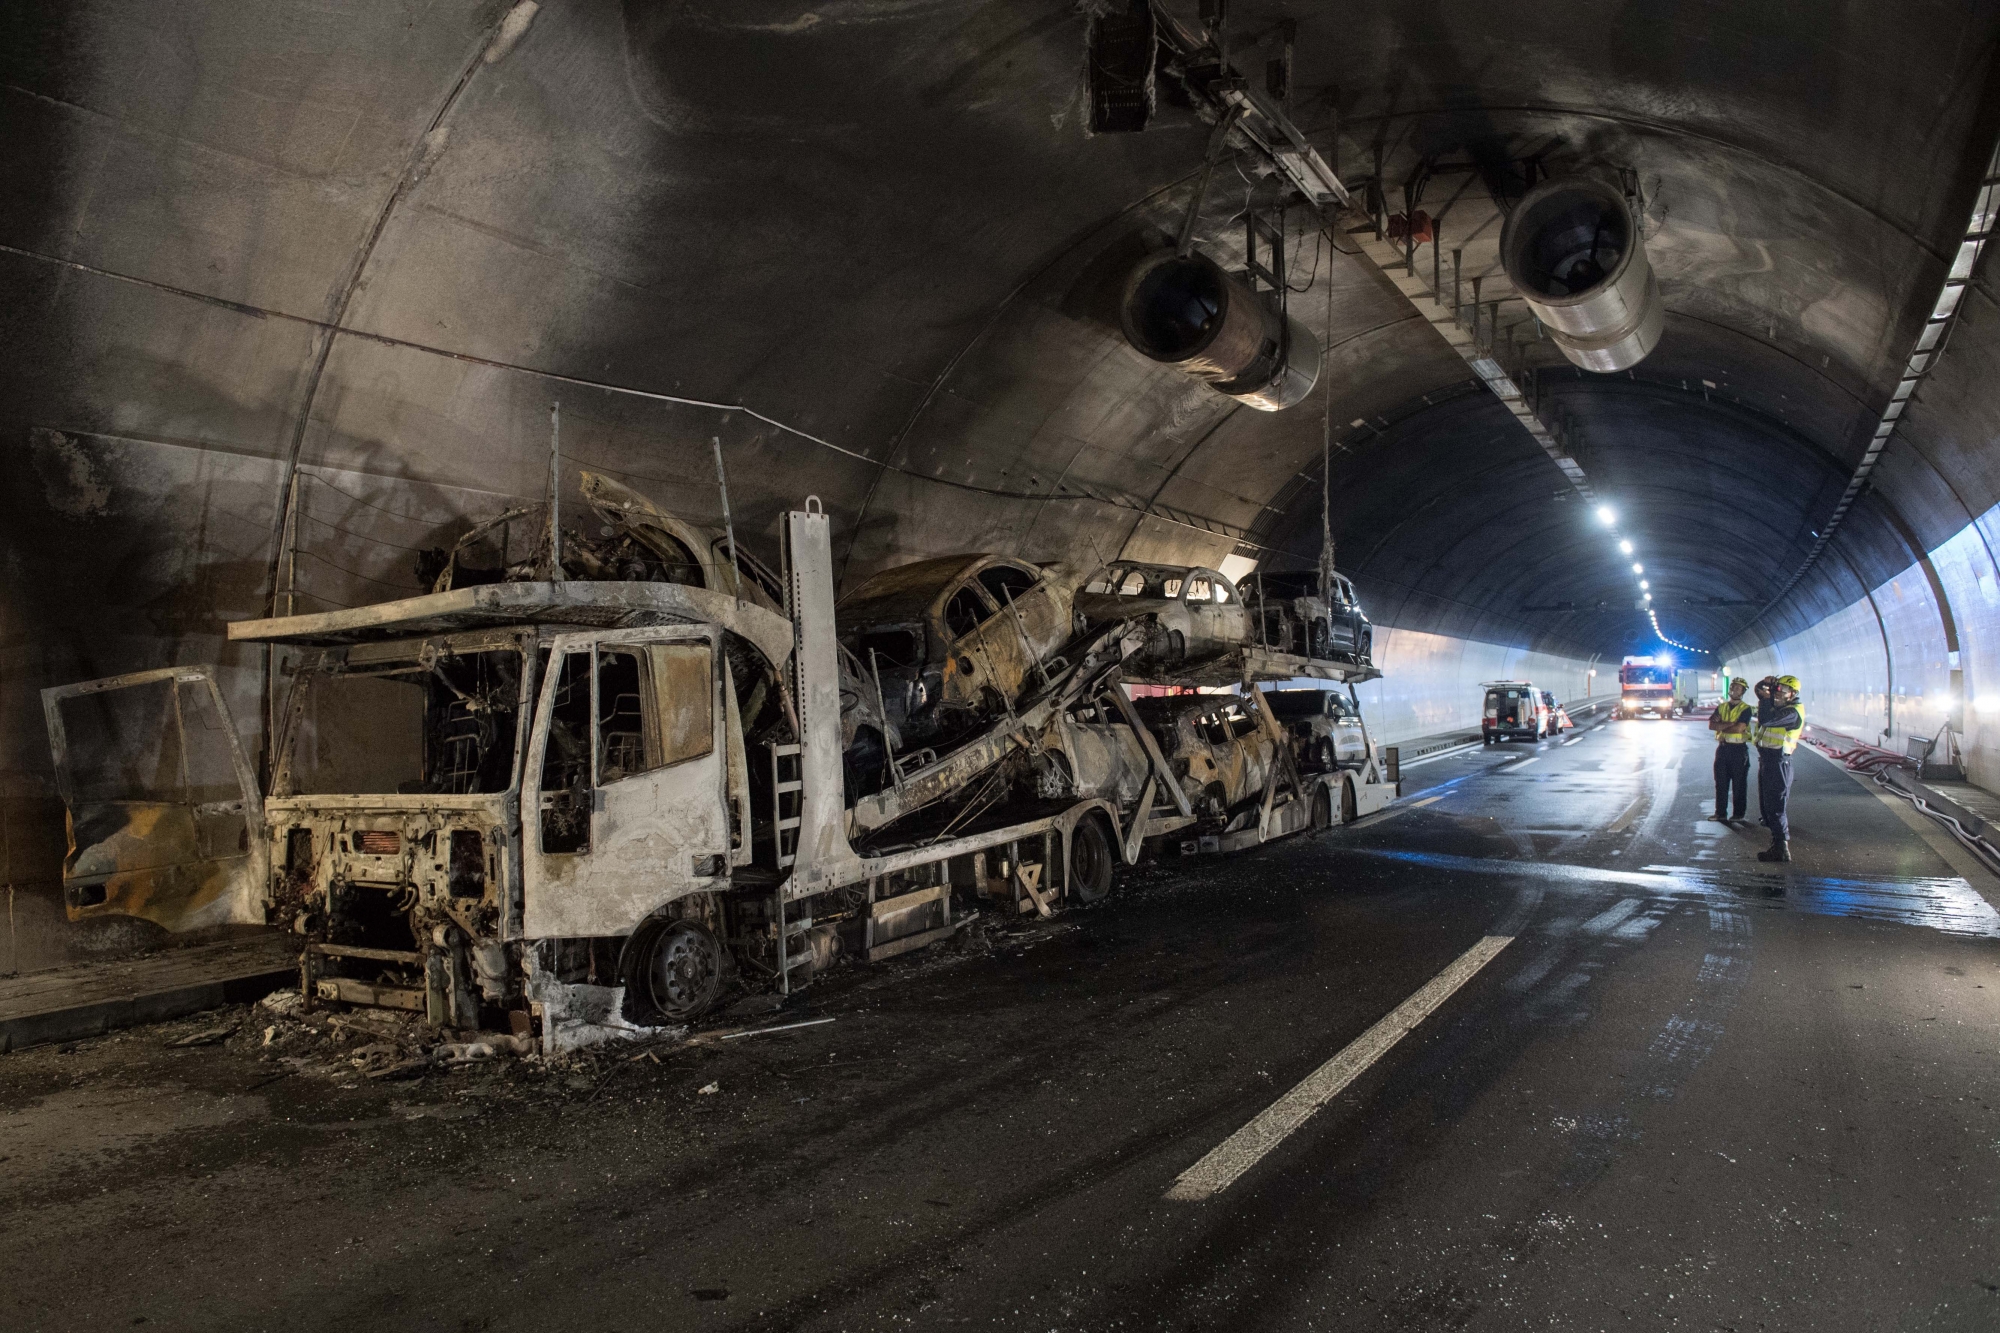 Ein ausgebrannter Autotransporter steht im Autobahntunnel Piottino, am Dienstag, 7. August 2018, bei Quinto. Im Piottino-Tunnel ist am Dienstagmorgen ein Lastwagen in Brand geraten. Der Autotransporter mit italienischen Kontrollschildern brannte vollstaendig aus. Verletzt wurde niemand. Die Autobahn A2 war in beide Richtungen gesperrt. (KEYSTONE/Ti-Press/Davide Agosta)

A burnt-out car transporter stands in the Piottino highway tunnel near Quinto, Switzerland, on Tuesday, August 7, 2018. The truck caught fire in the Piottino tunnel on Tuesday morning. The car transporter with Italian license plates burned out completely. Nobody was hurt. The A2 motorway was closed in both directions. (KEYSTONE/Ti-Press/Davide Agosta) SCHWEIZ BRAND LASTWAGEN PIOTTINO-TUNNEL